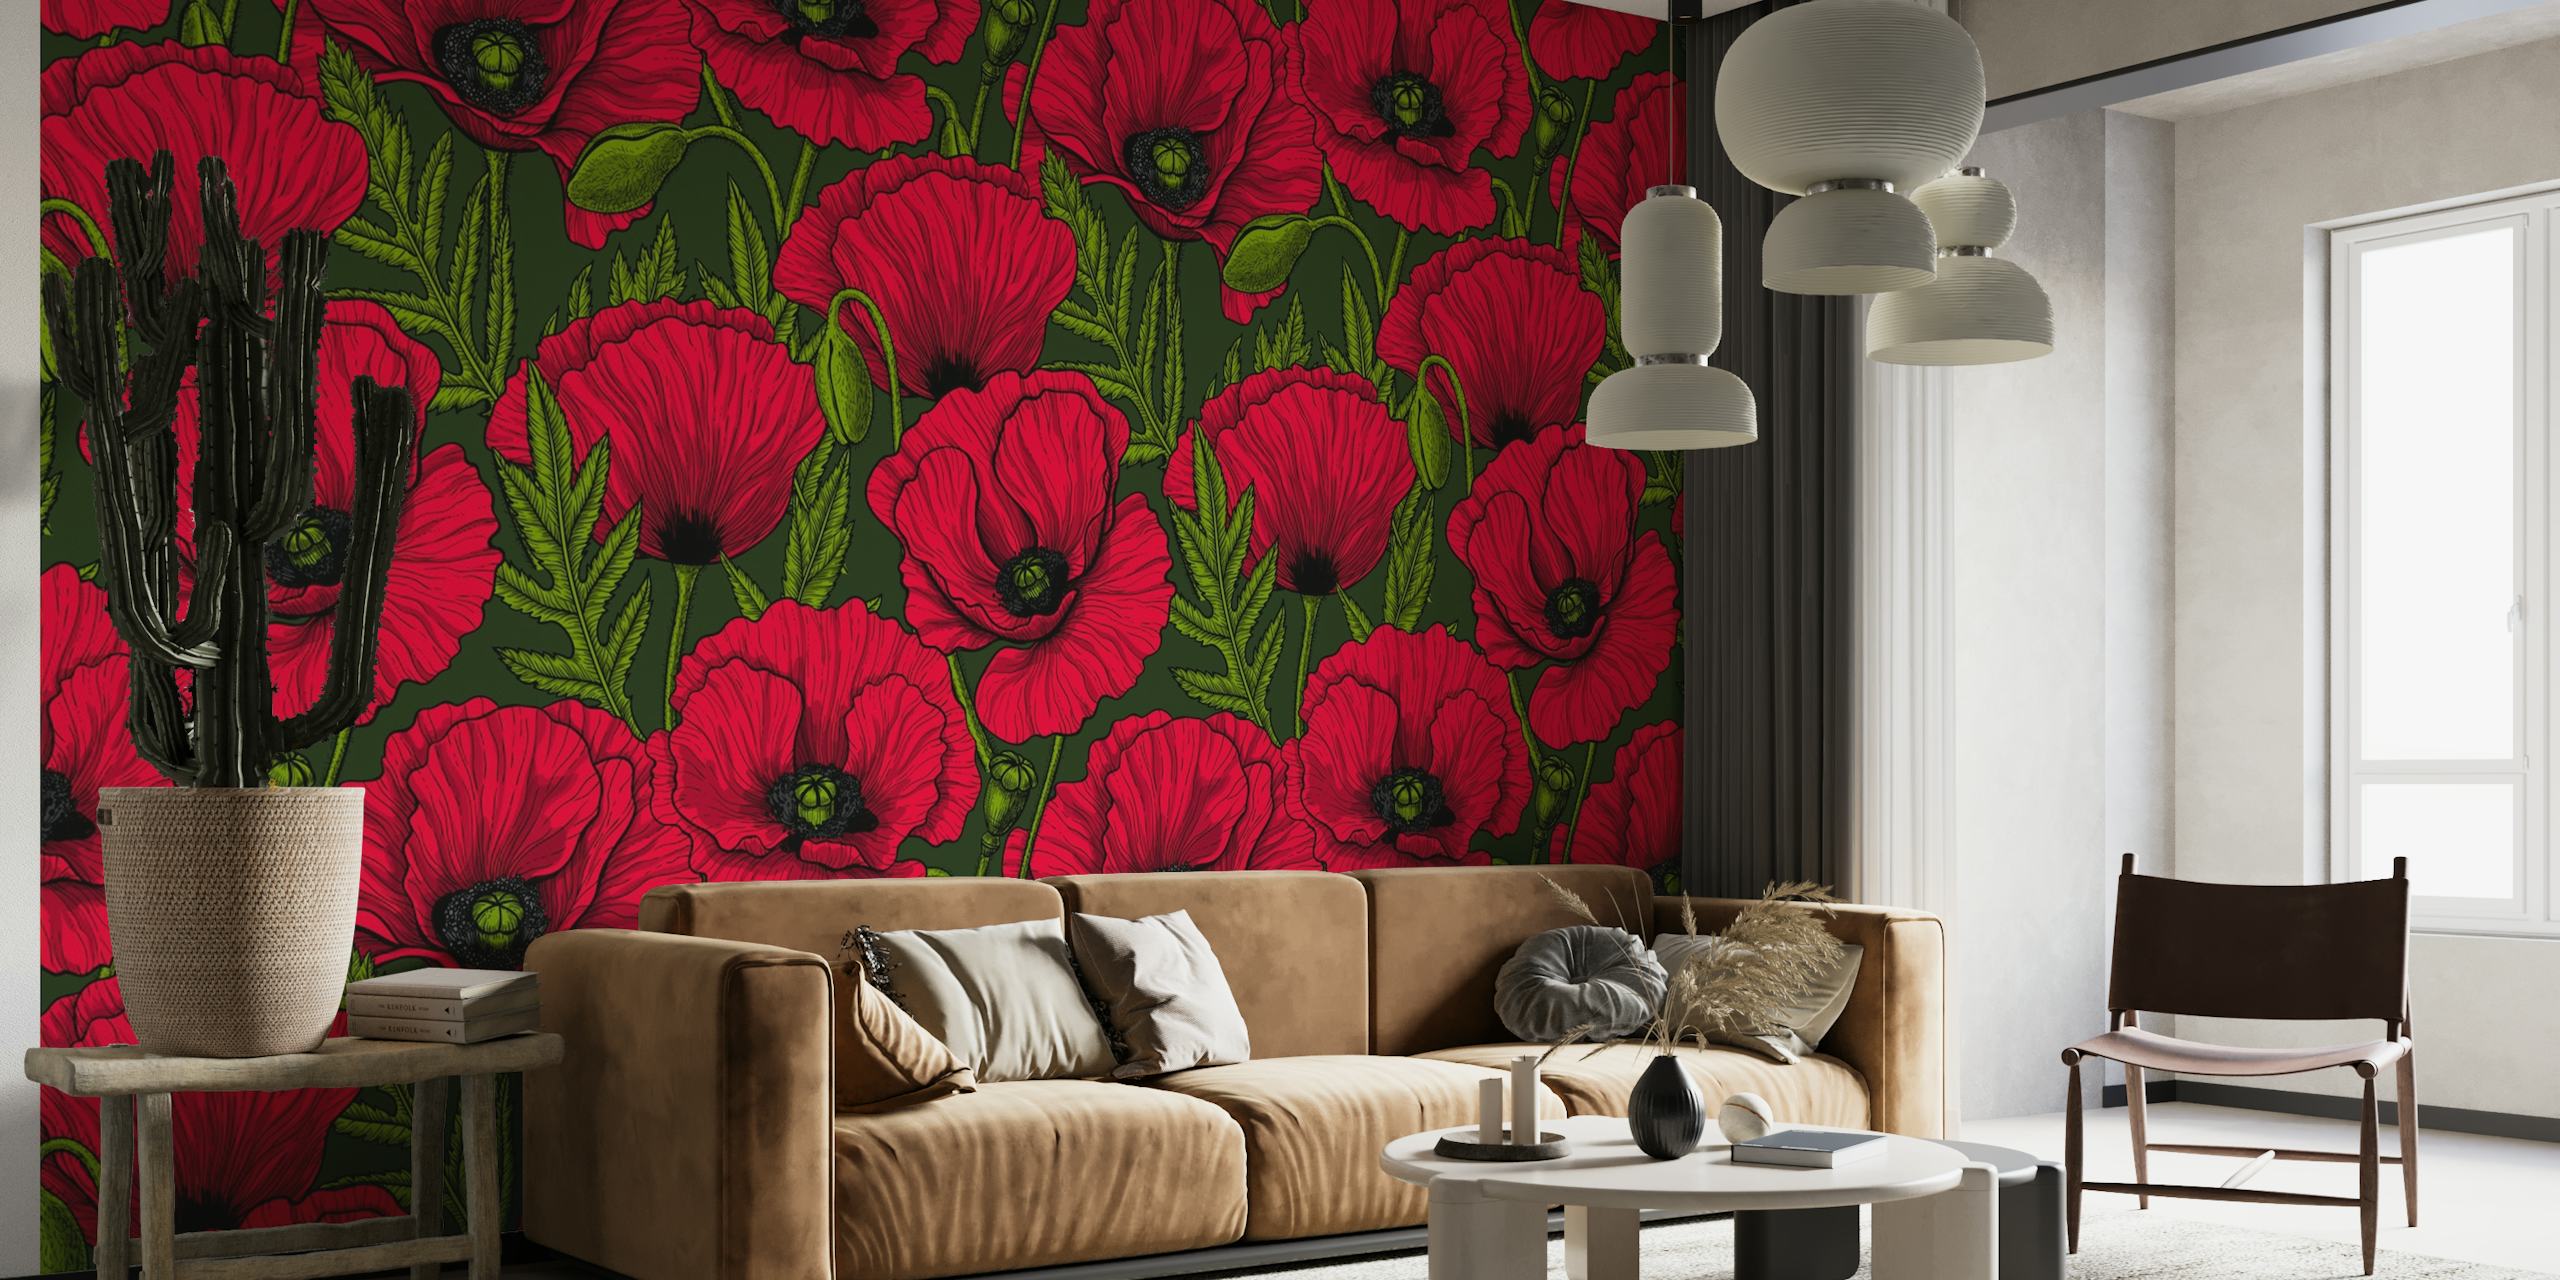 Red Poppy garden 4 wallpaper